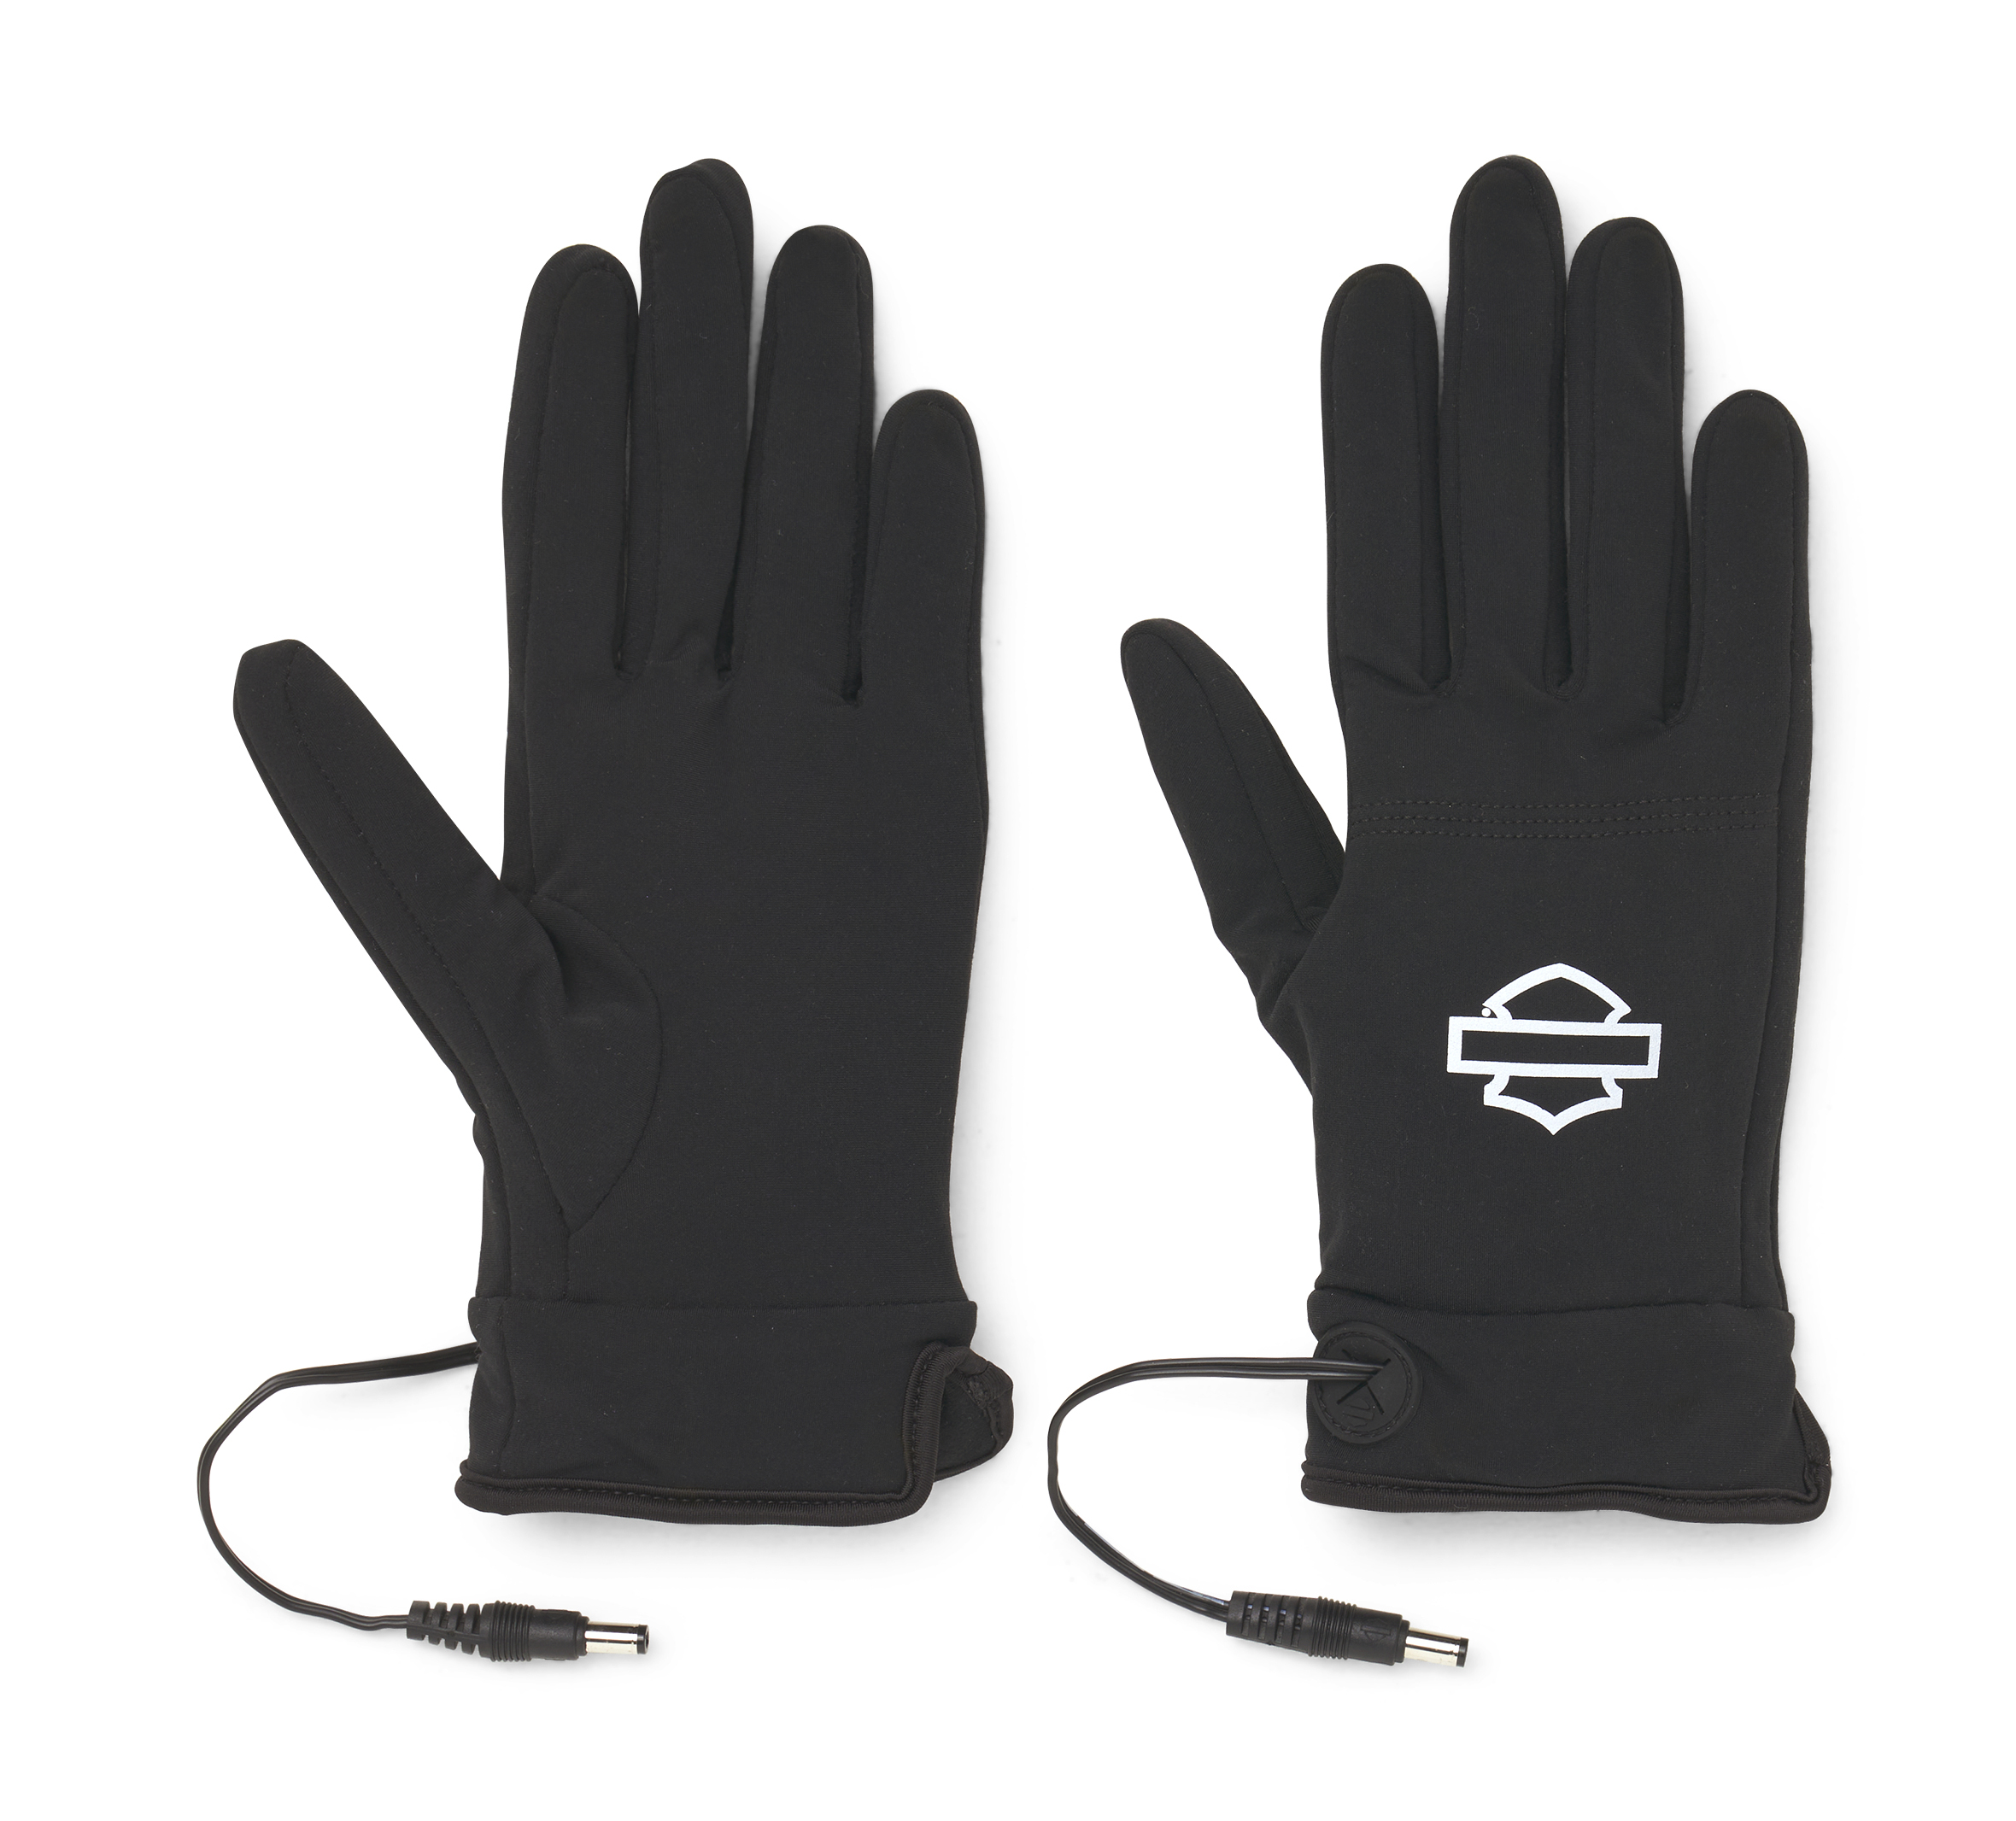 Mobile Warming 7.4V Unisex Heated Glove Liner